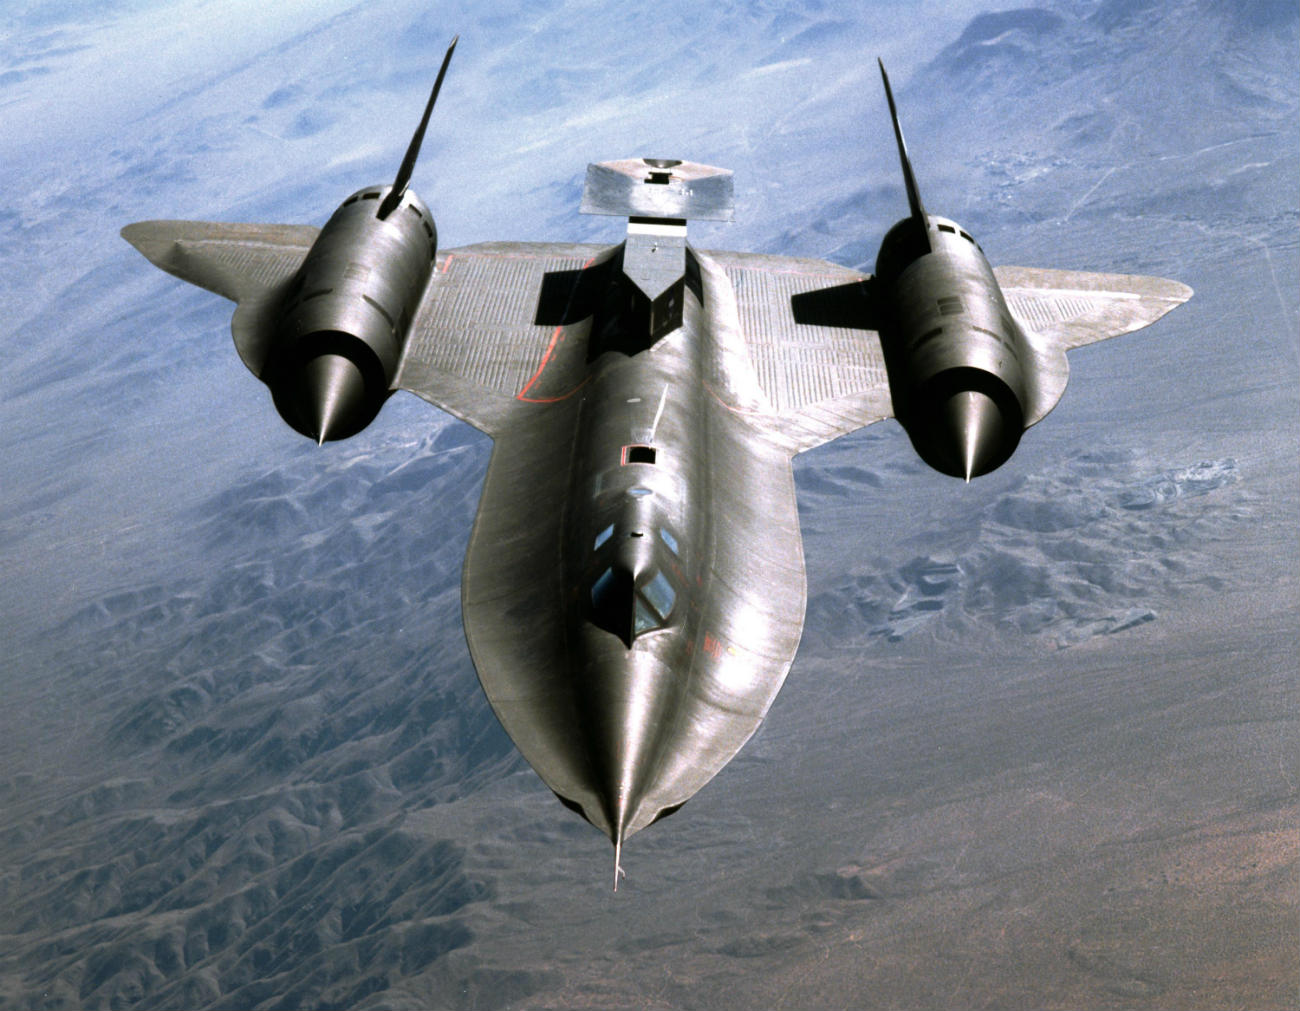 SR-71 Blackbird in flight